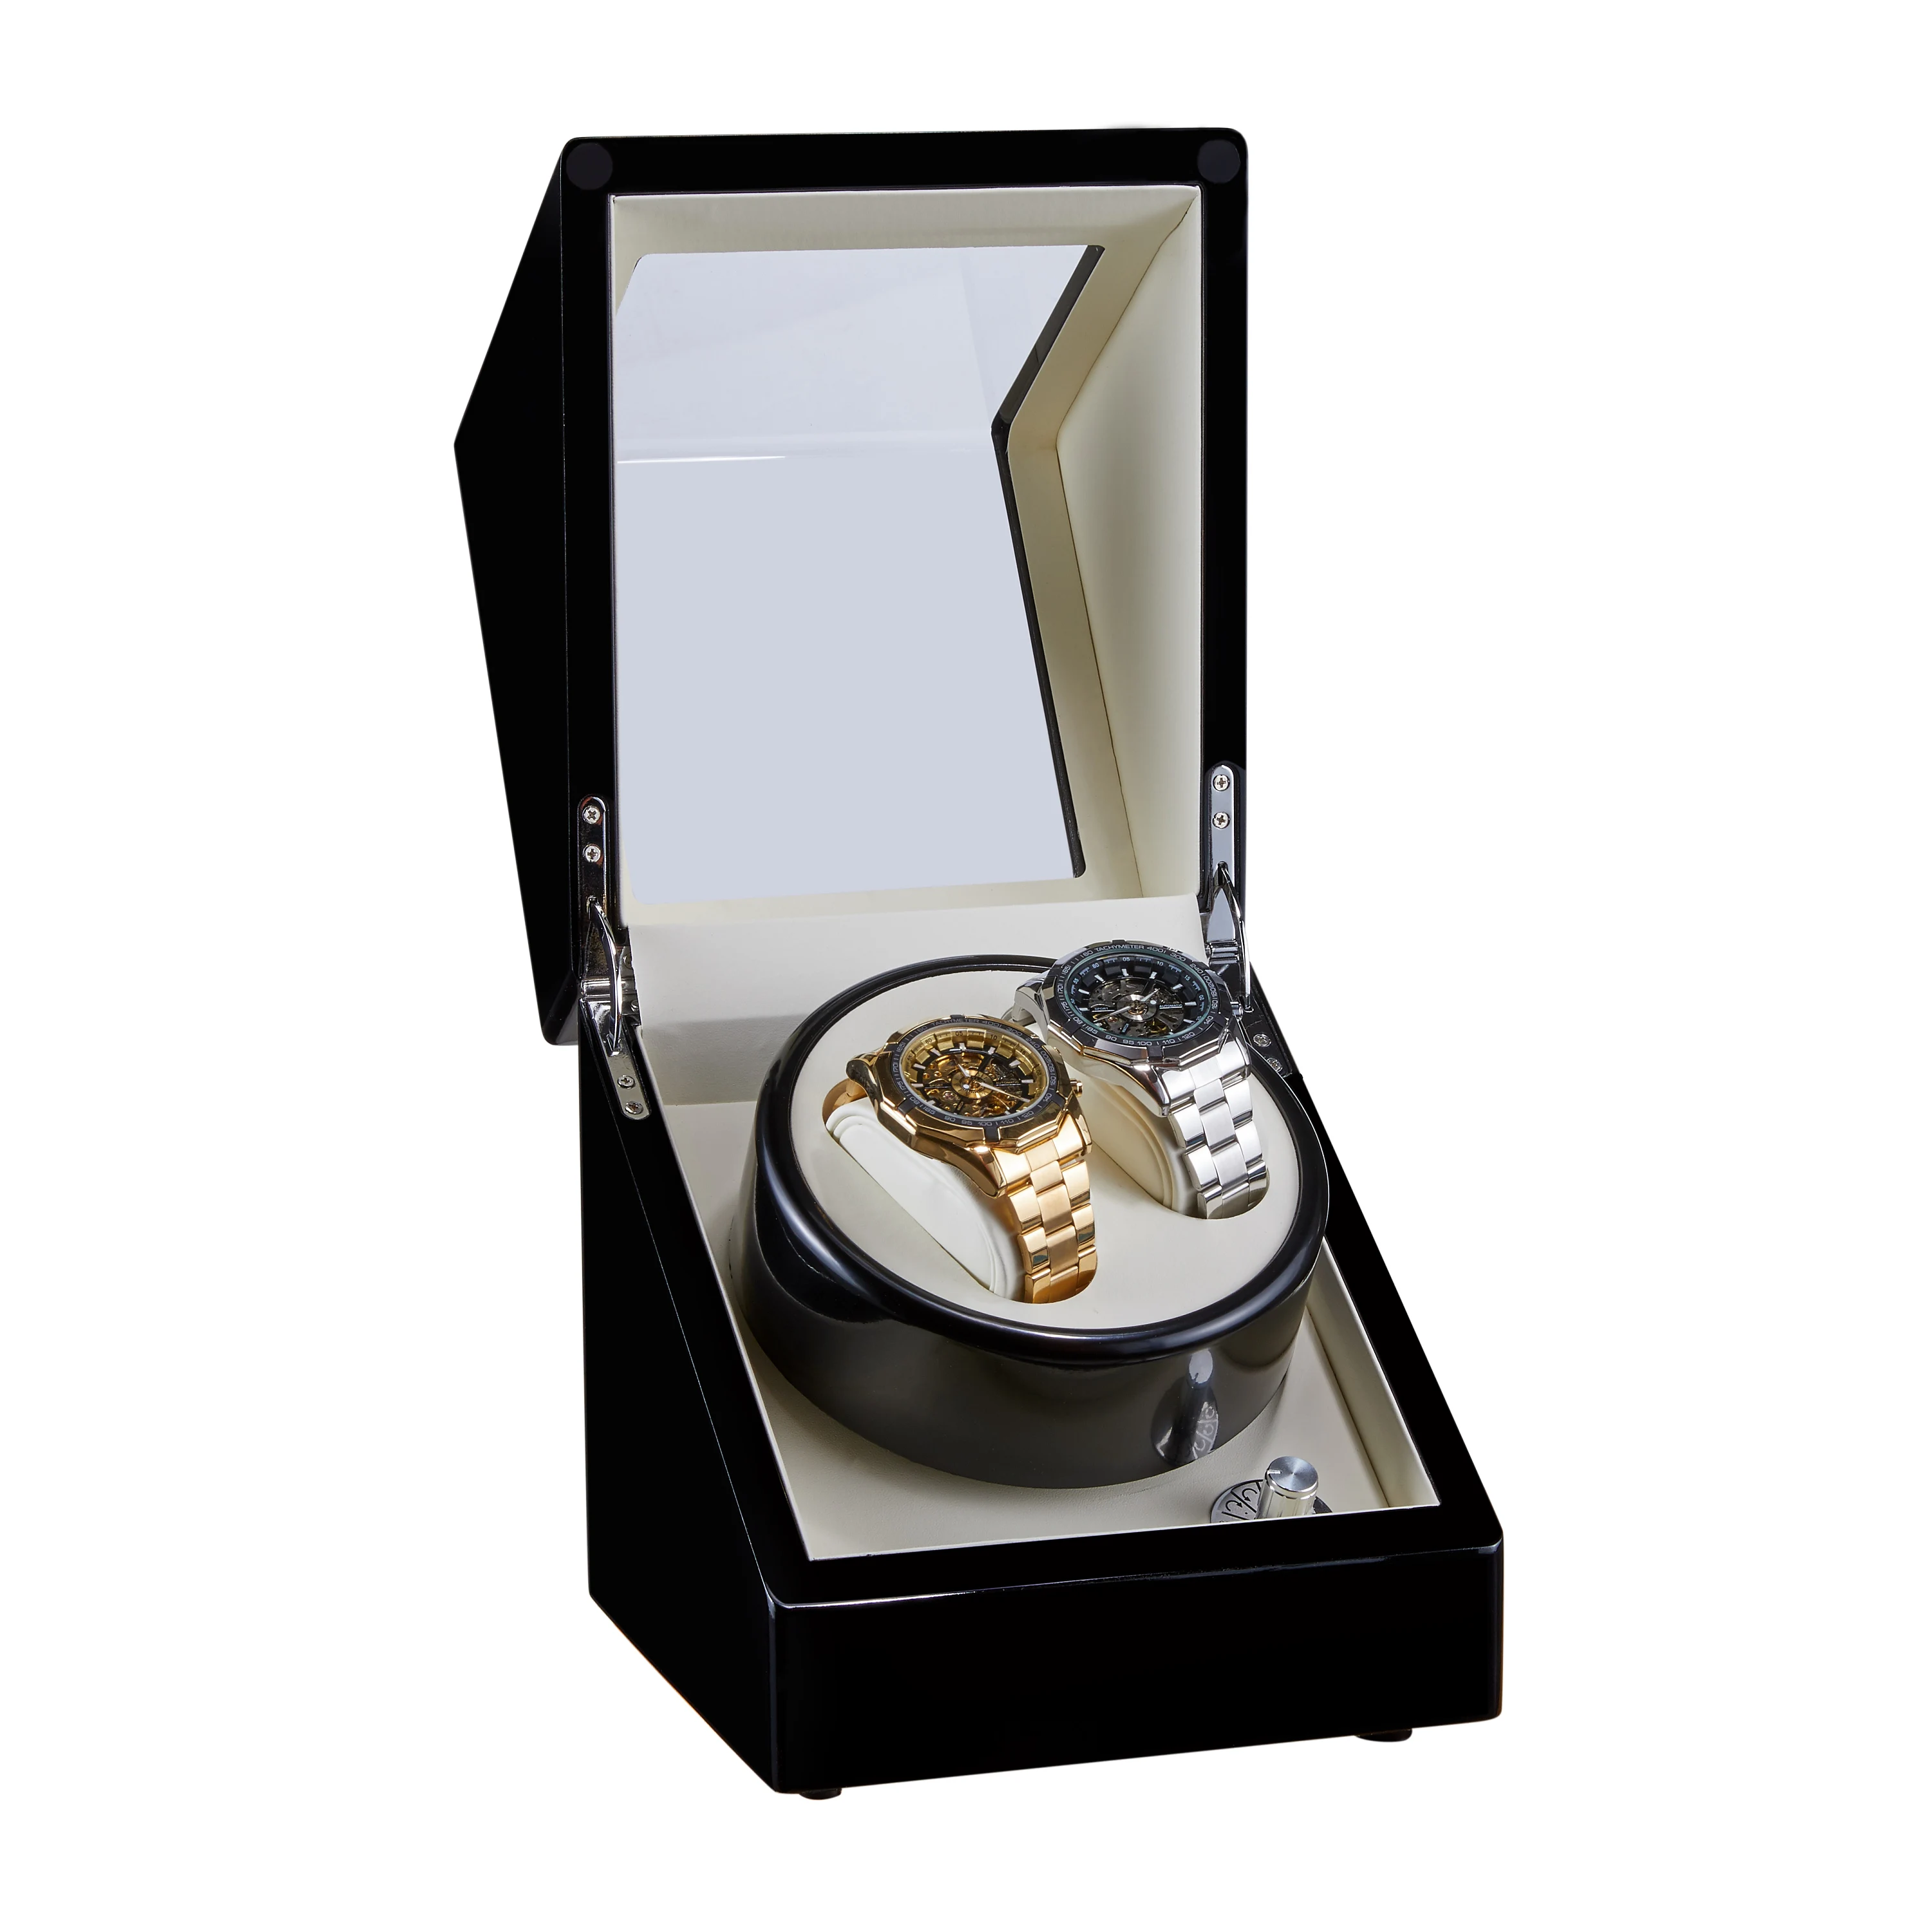 Красный деревянный виндер механических часов мотор шейкер двойной часы коробка с подзаводом держатель дисплей ювелирных изделий Органайзер для хранения